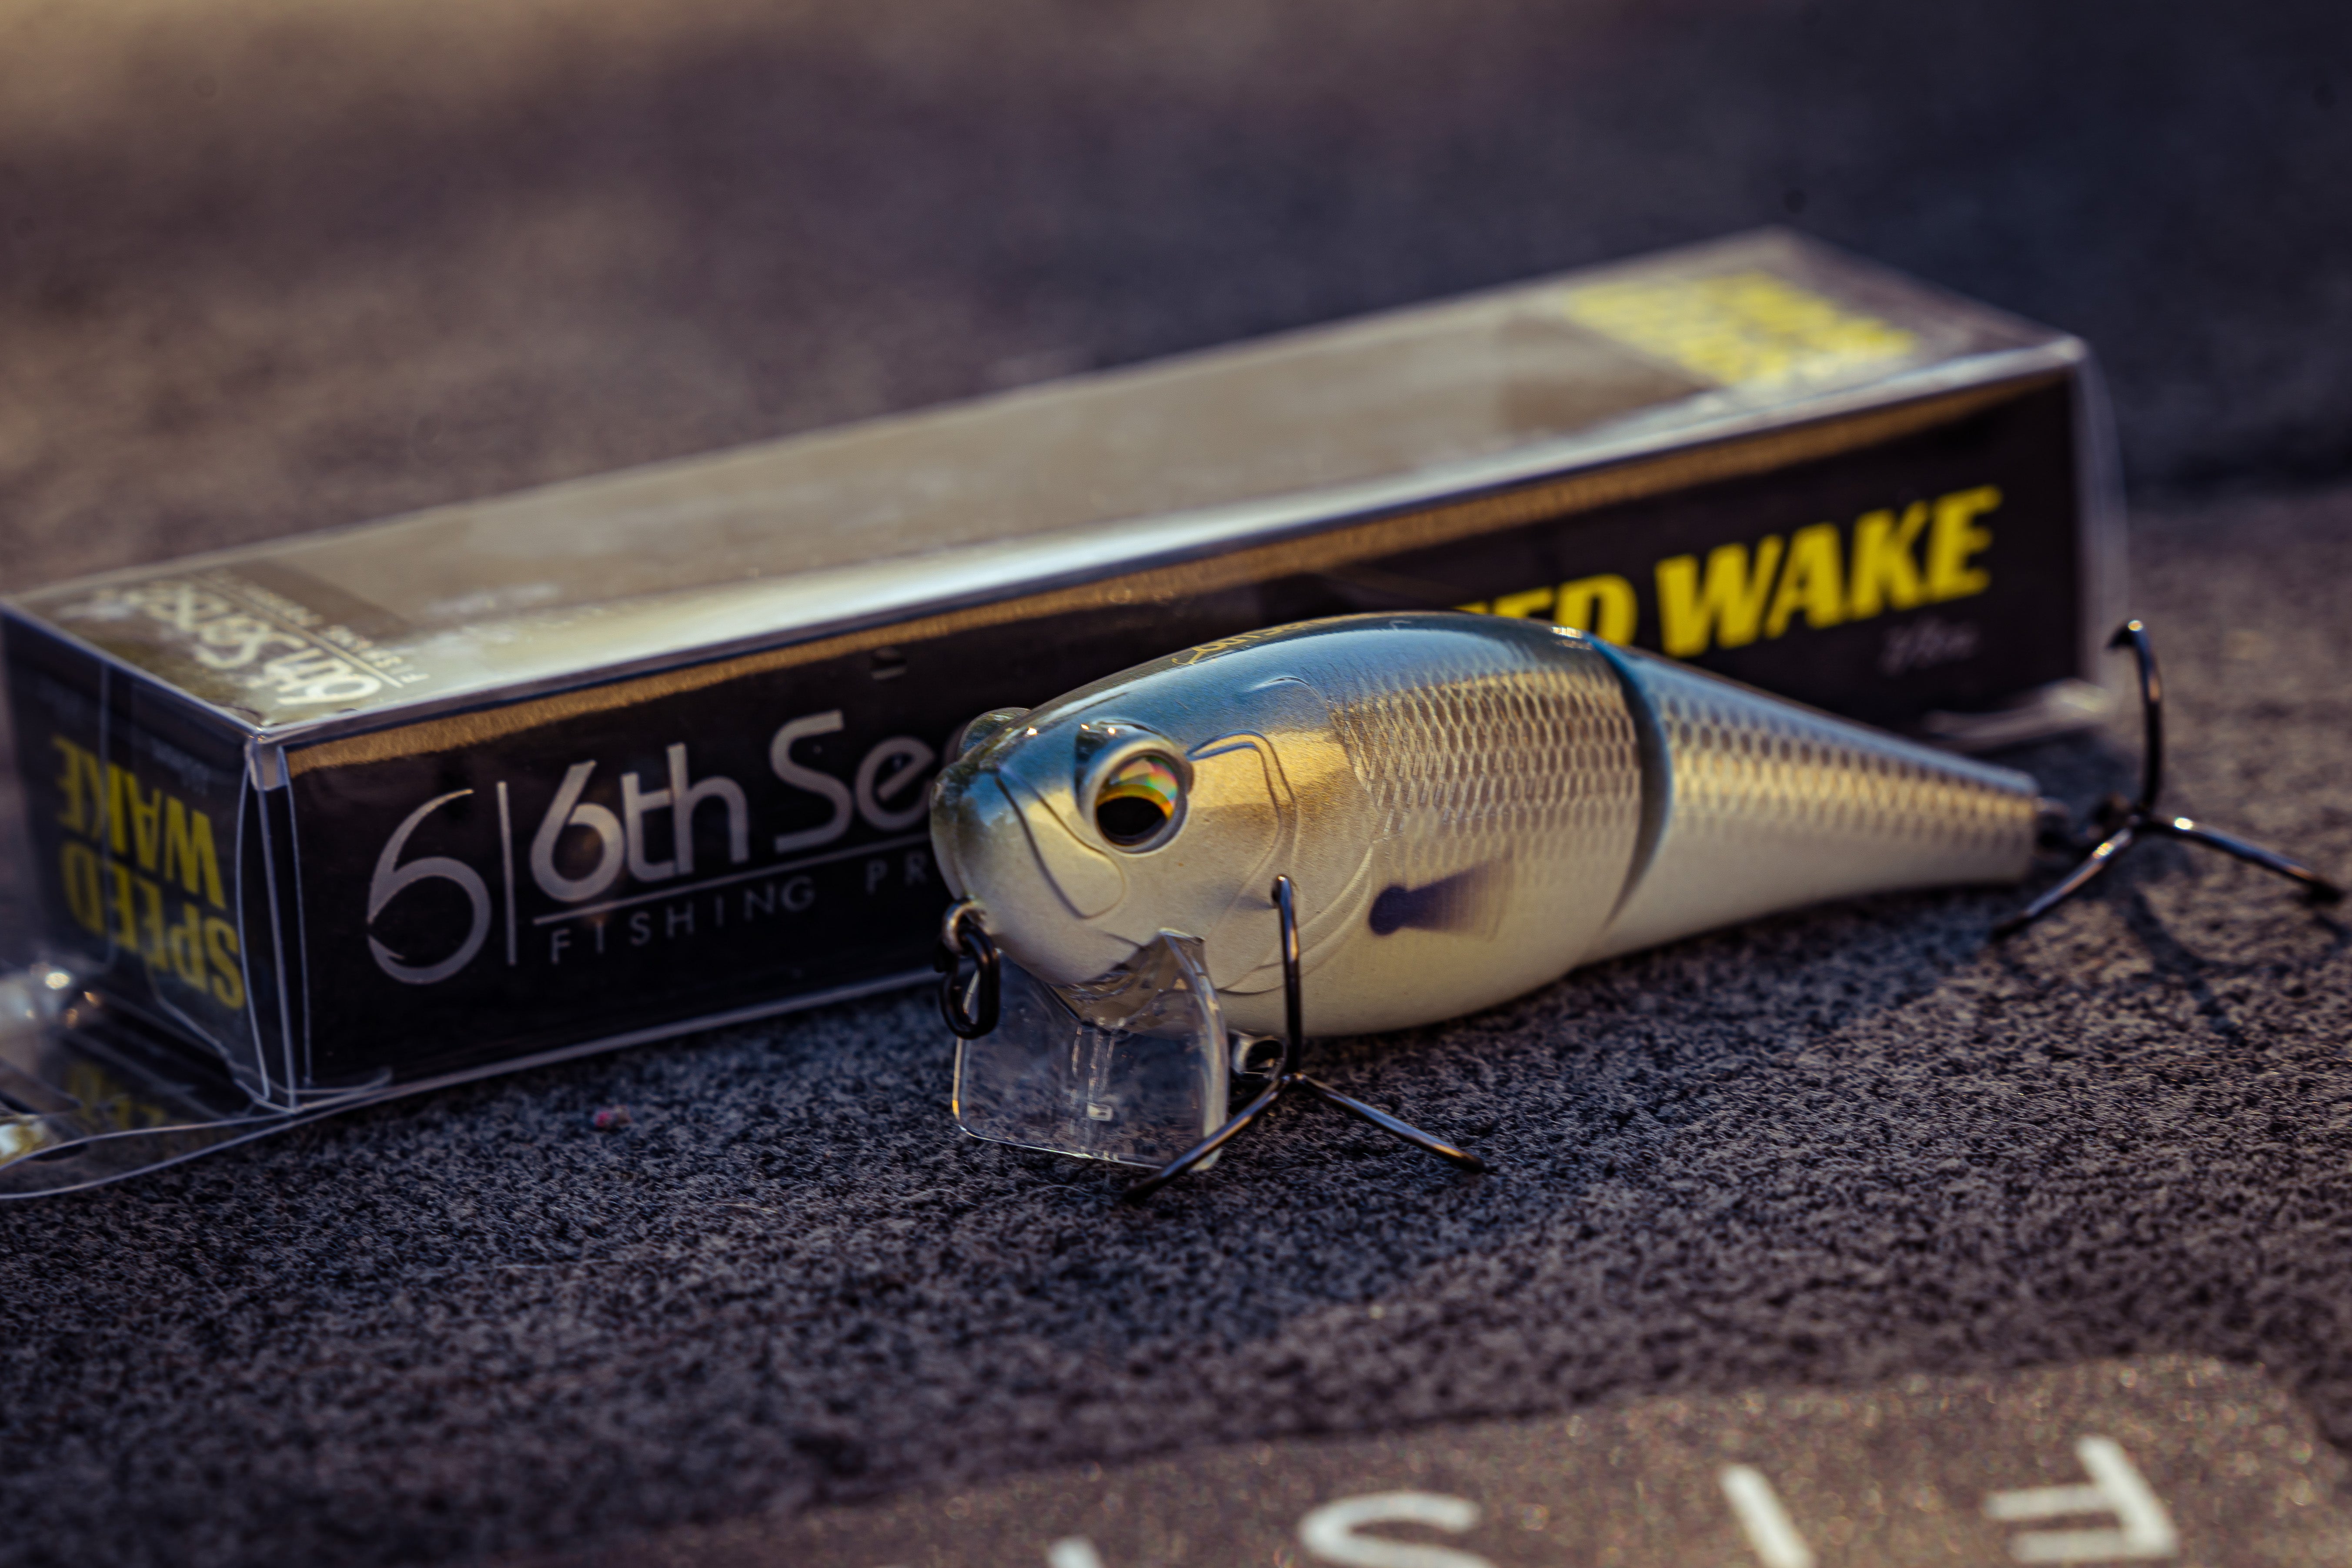 6th Sense Fishing Speed Wake - Shallow - Crankbait - Wakebait - Bass Lure